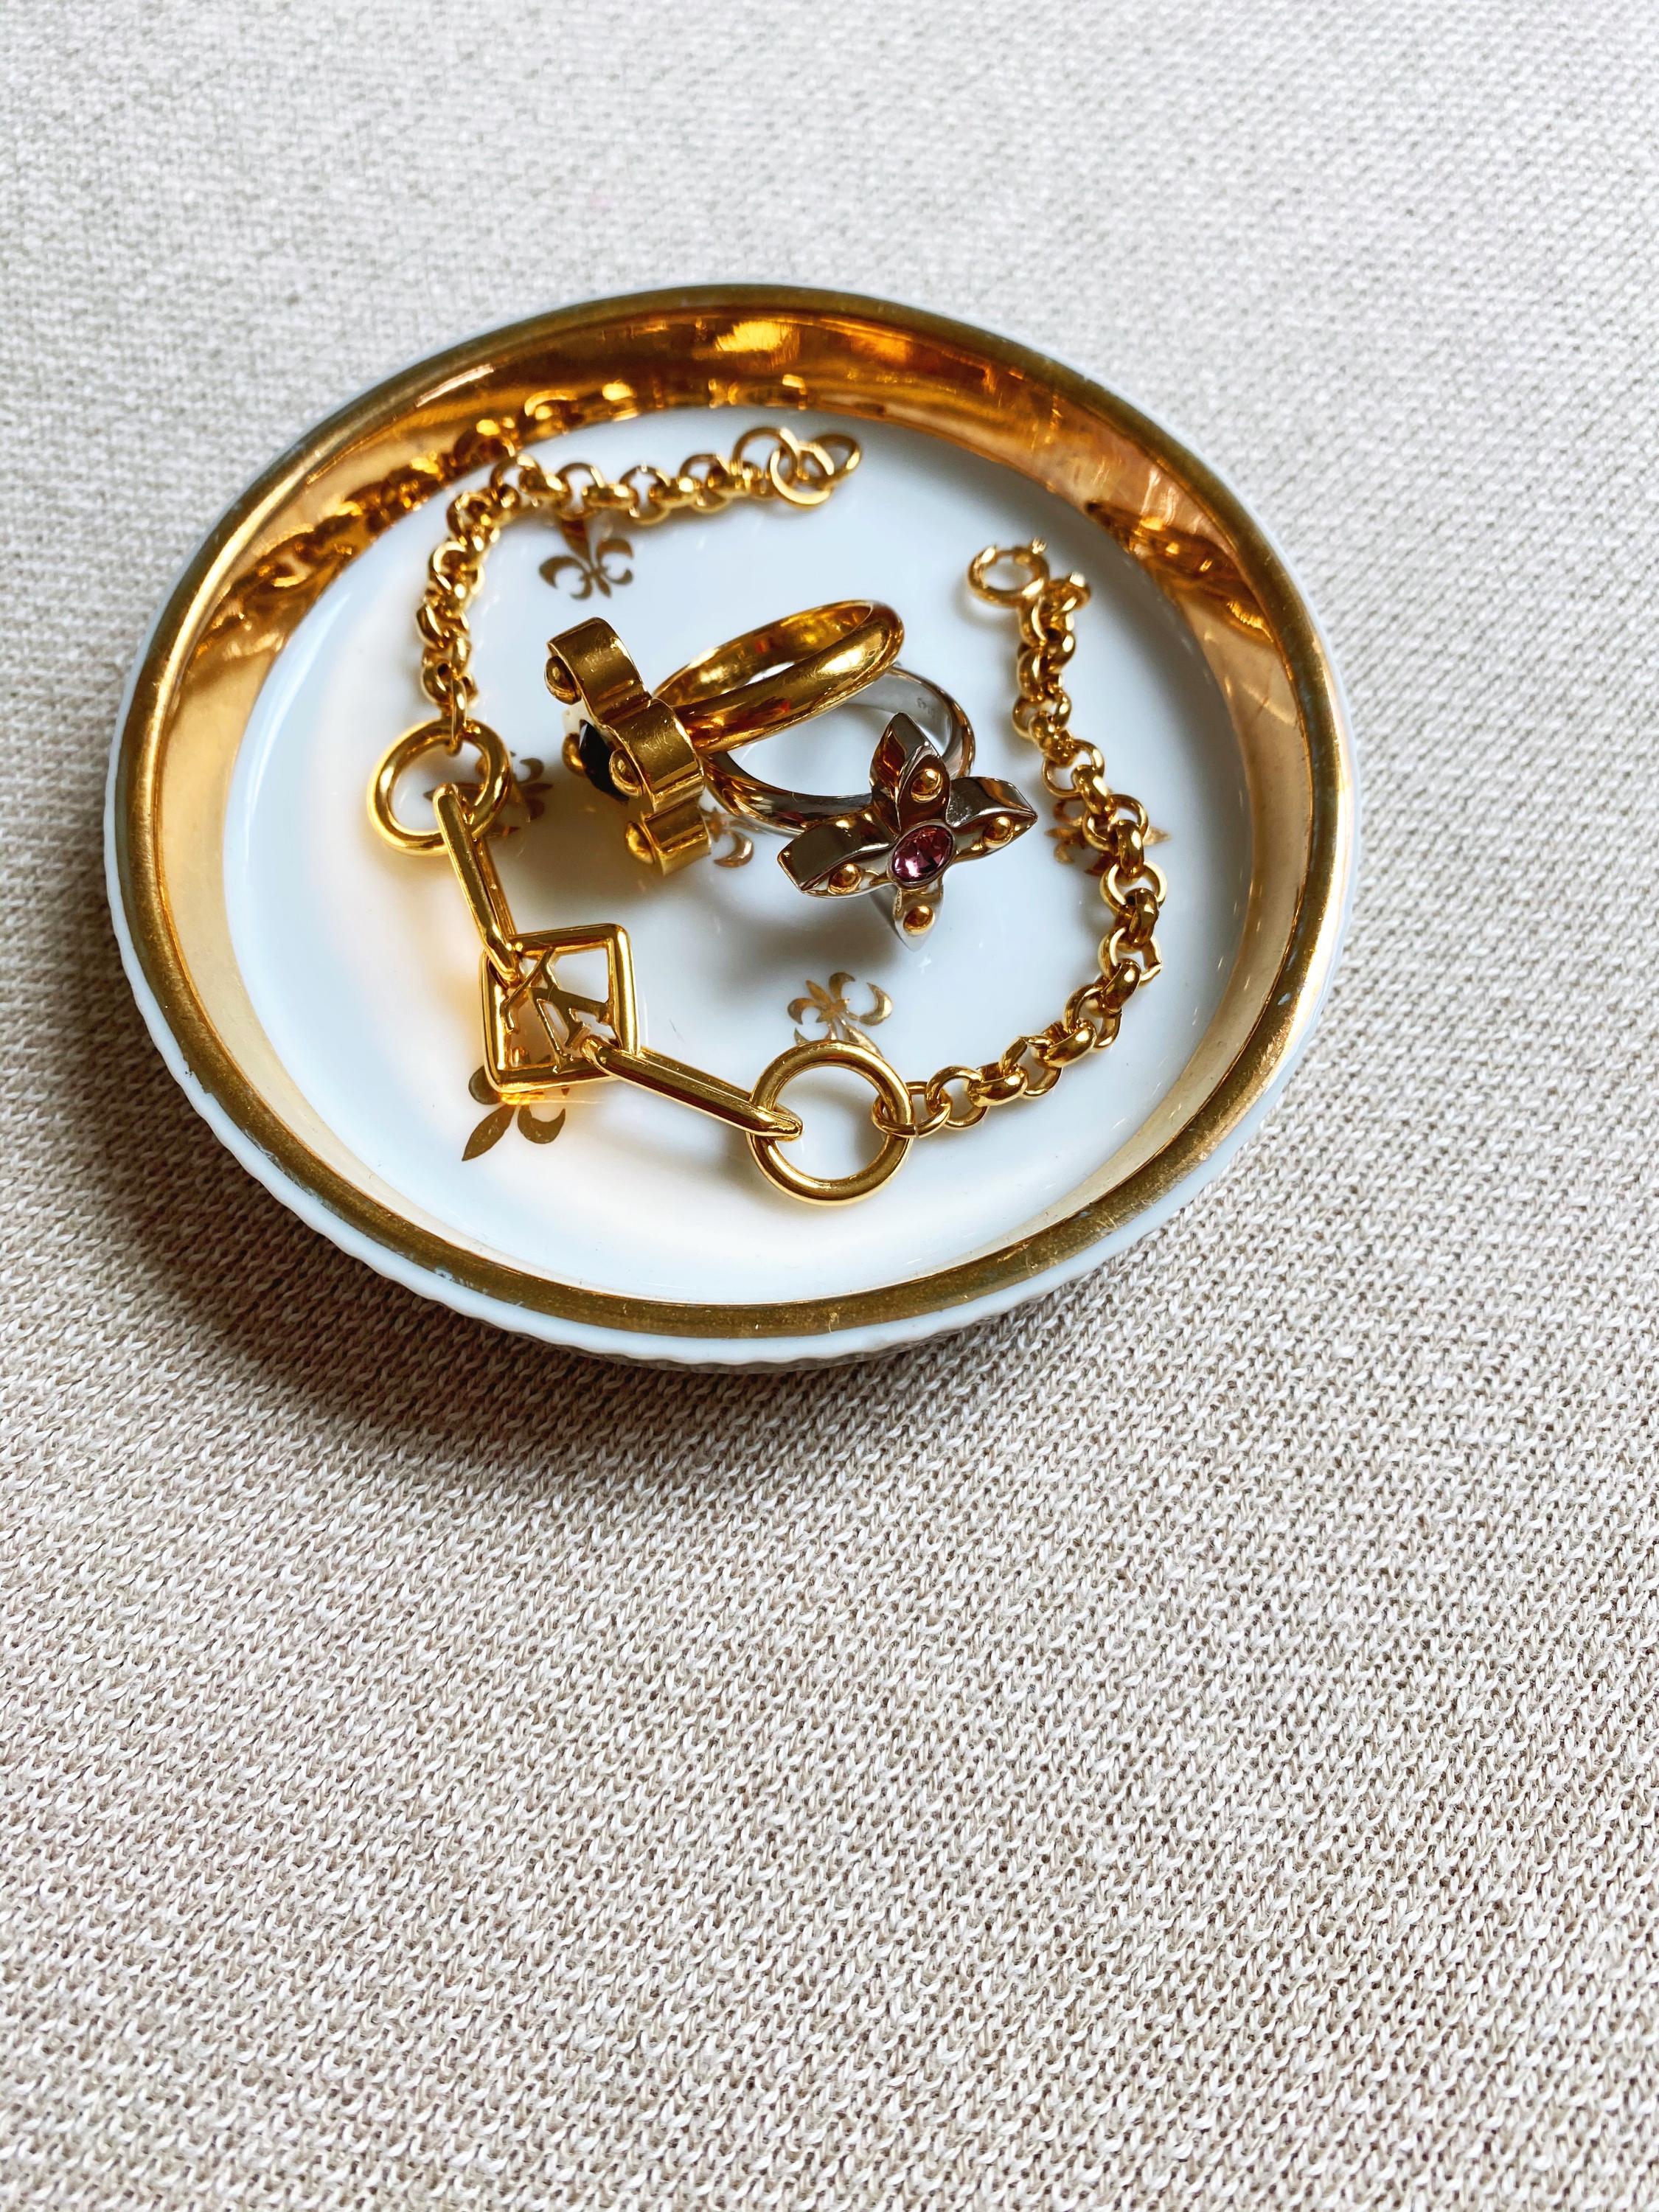 100% Authentic Vintage Louis Vuitton Gold Flower Ring, Size 8